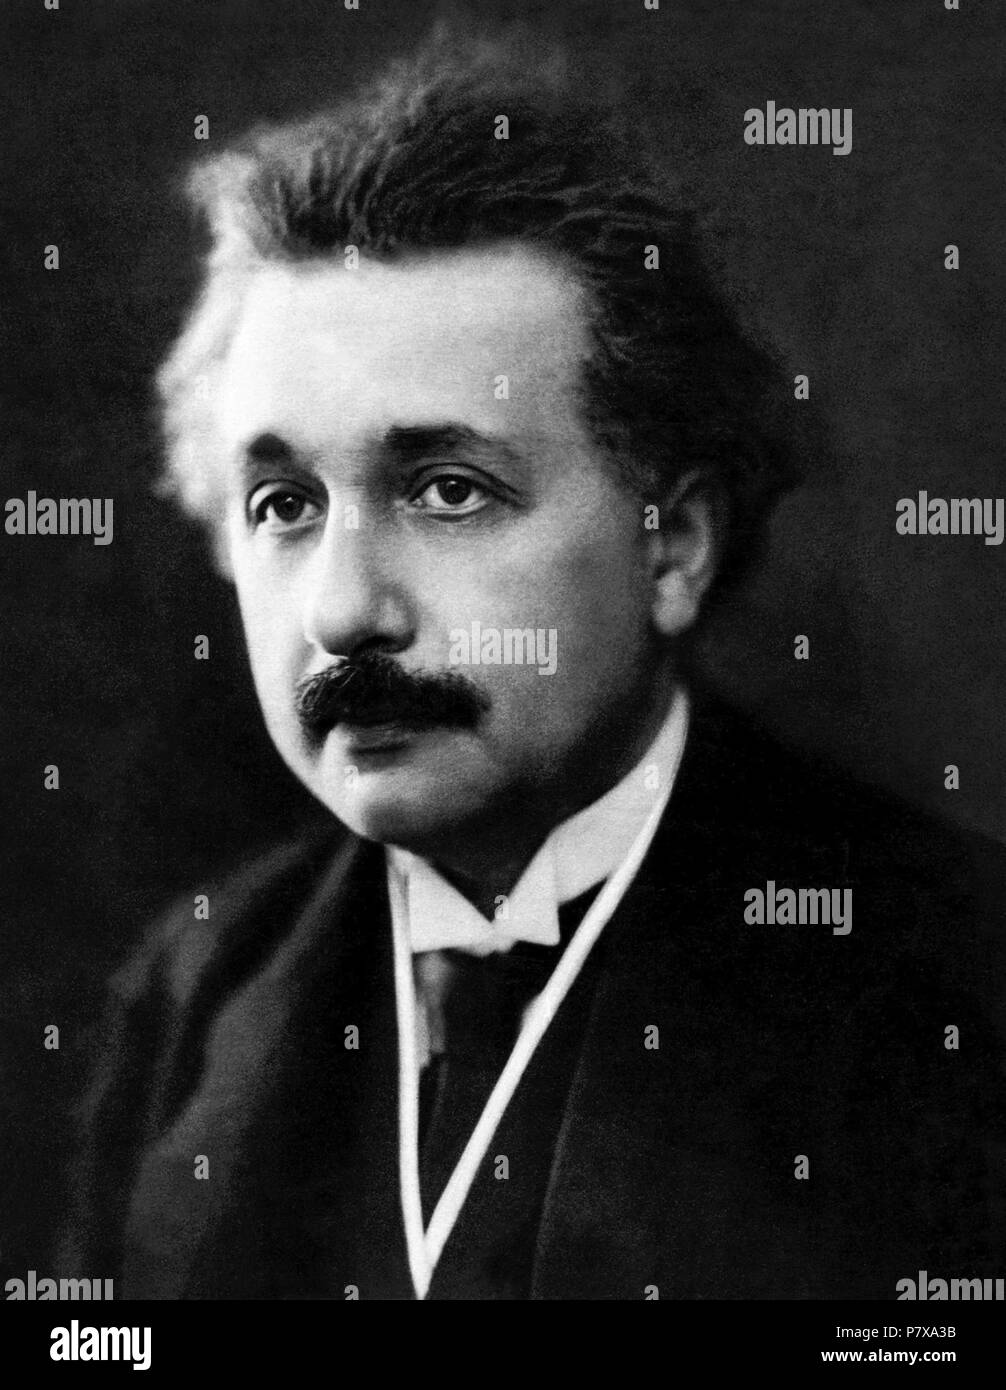 Albert Einstein ritratto da Henri Manuel (probabilmente a partire dal mese di Marzo 30, 1922 a Parigi, in Francia). Einstein ha vinto il Premio Nobel per la Fisica nel 1921. Foto Stock